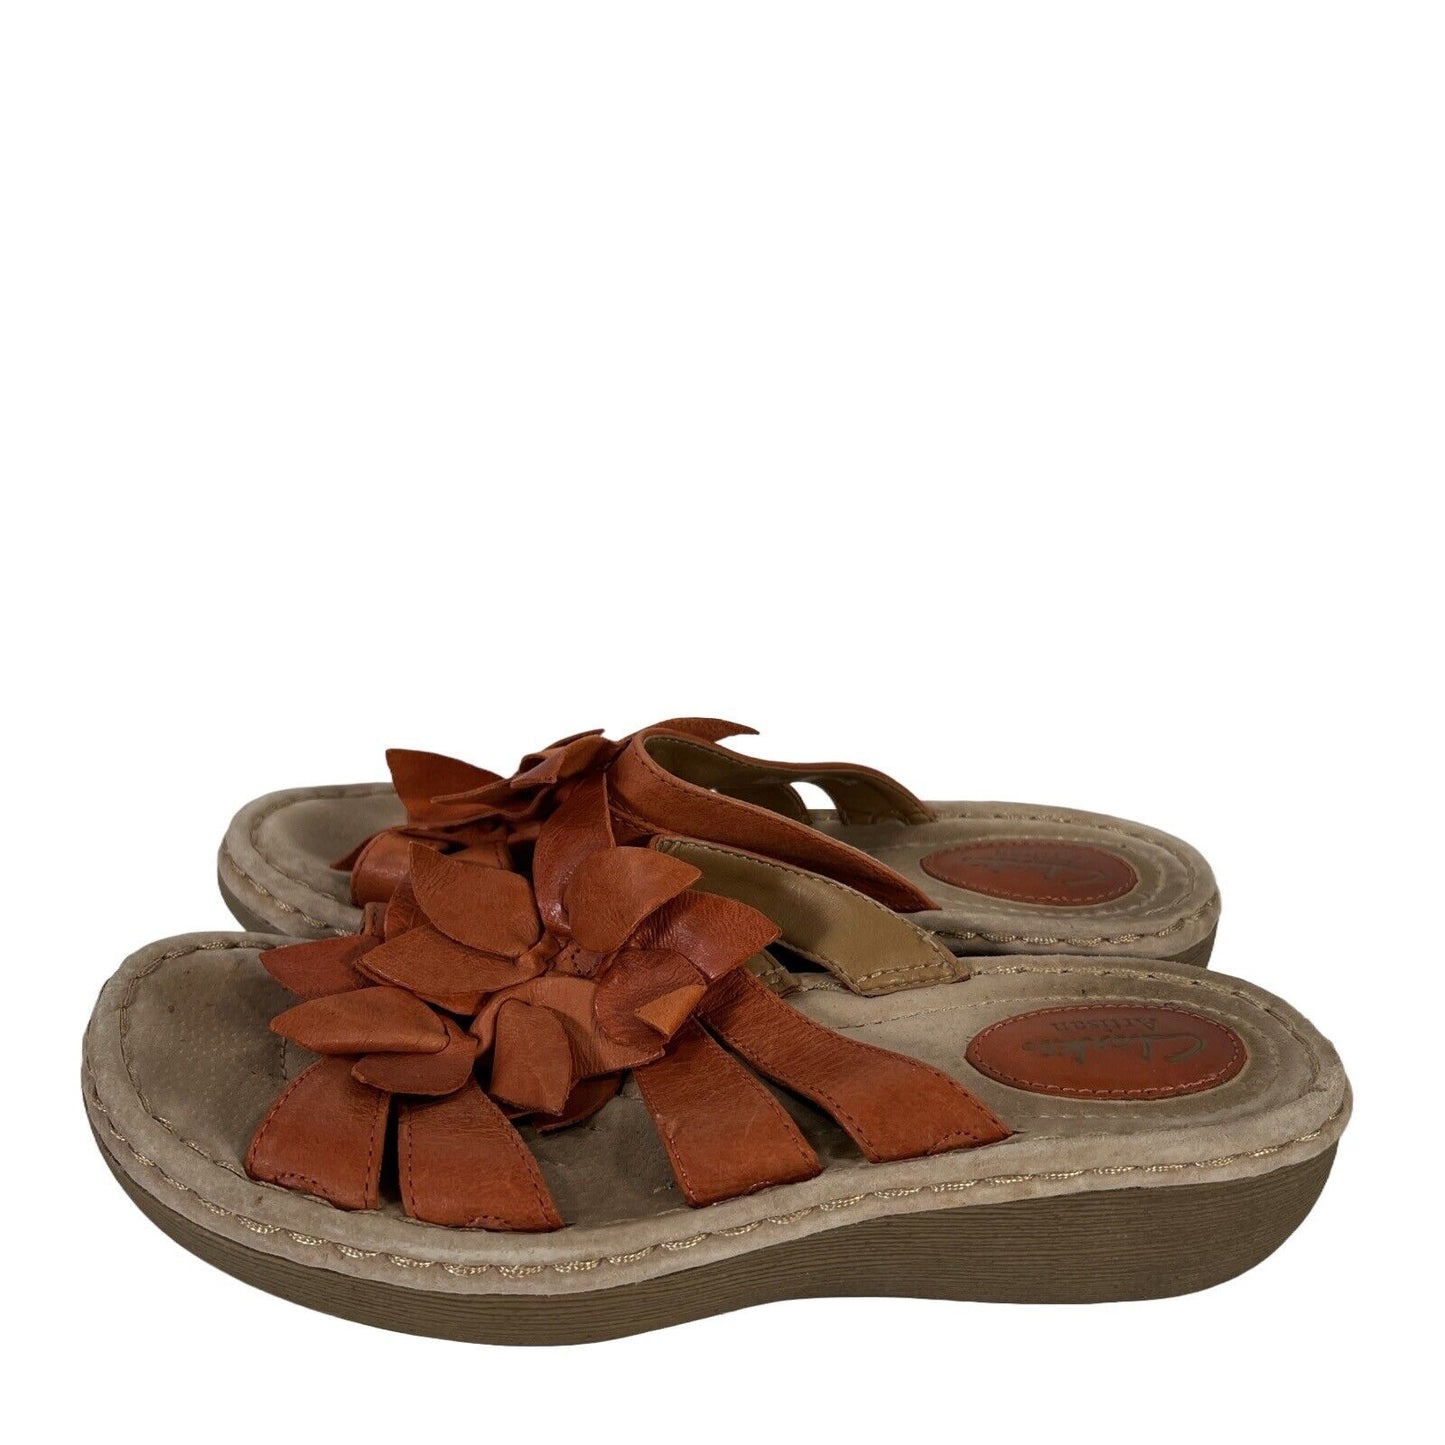 Clarks Artisan Women's Orange Leather Strappy Platform Sandals - 8.5